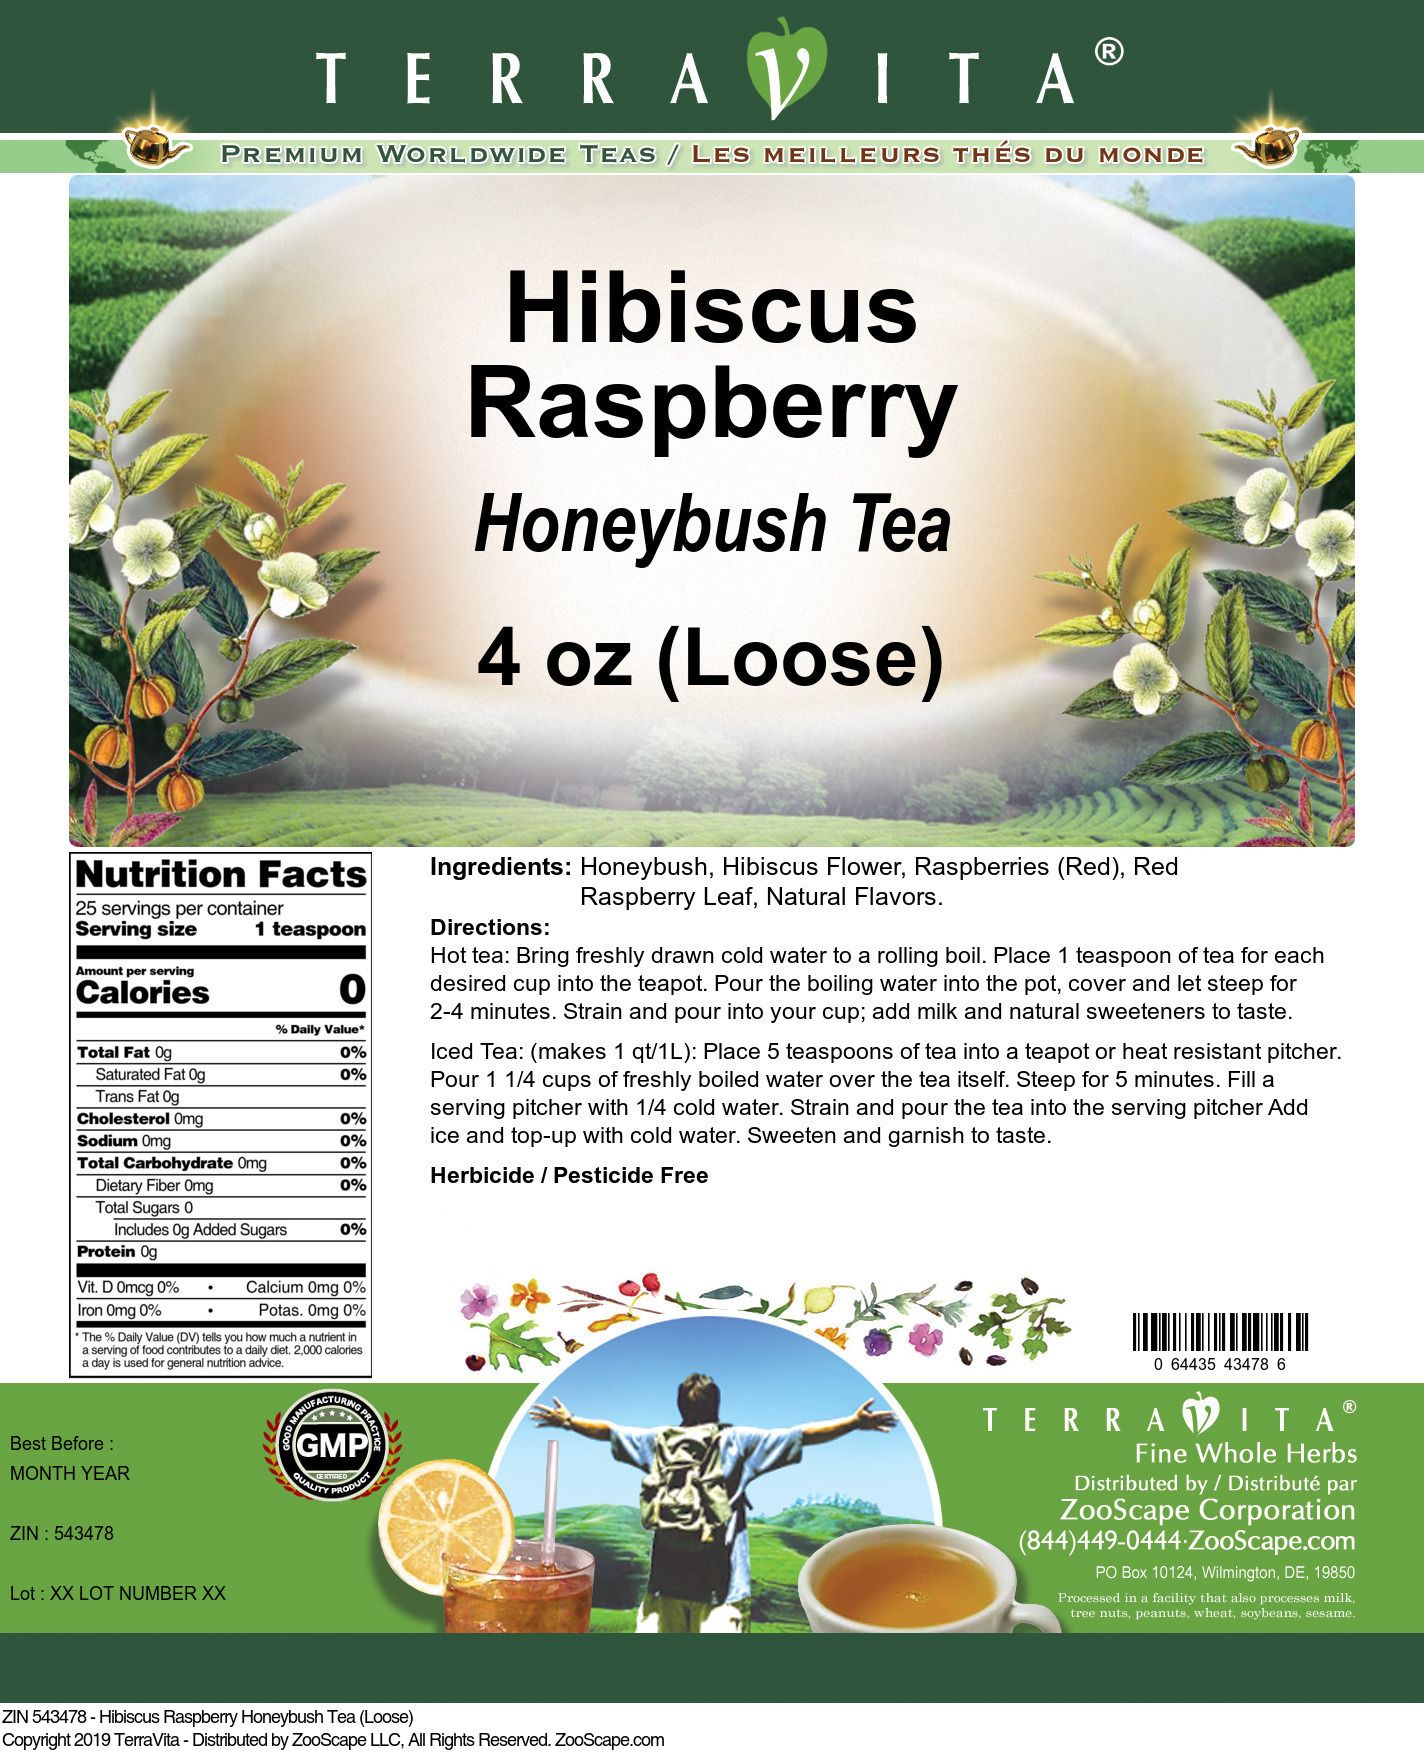 Hibiscus Raspberry Honeybush Tea (Loose) - Label